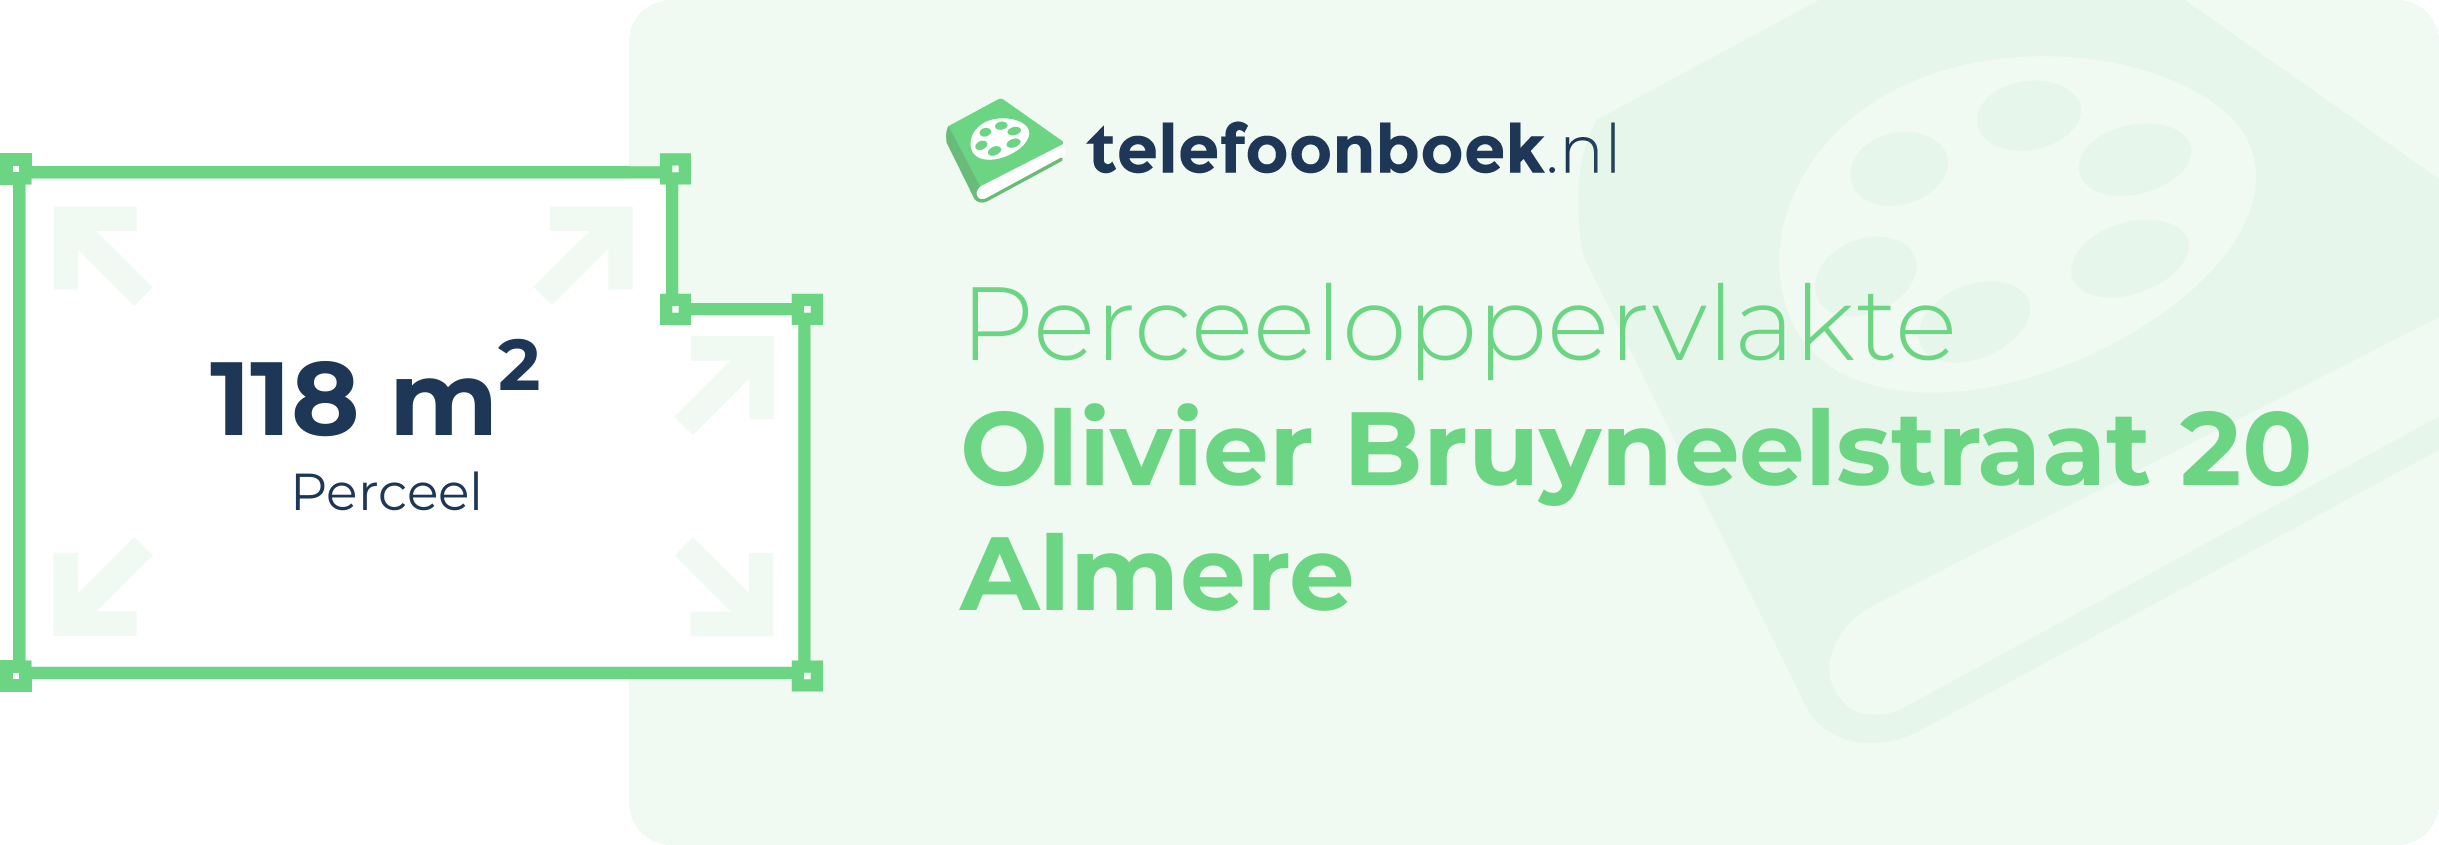 Perceeloppervlakte Olivier Bruyneelstraat 20 Almere